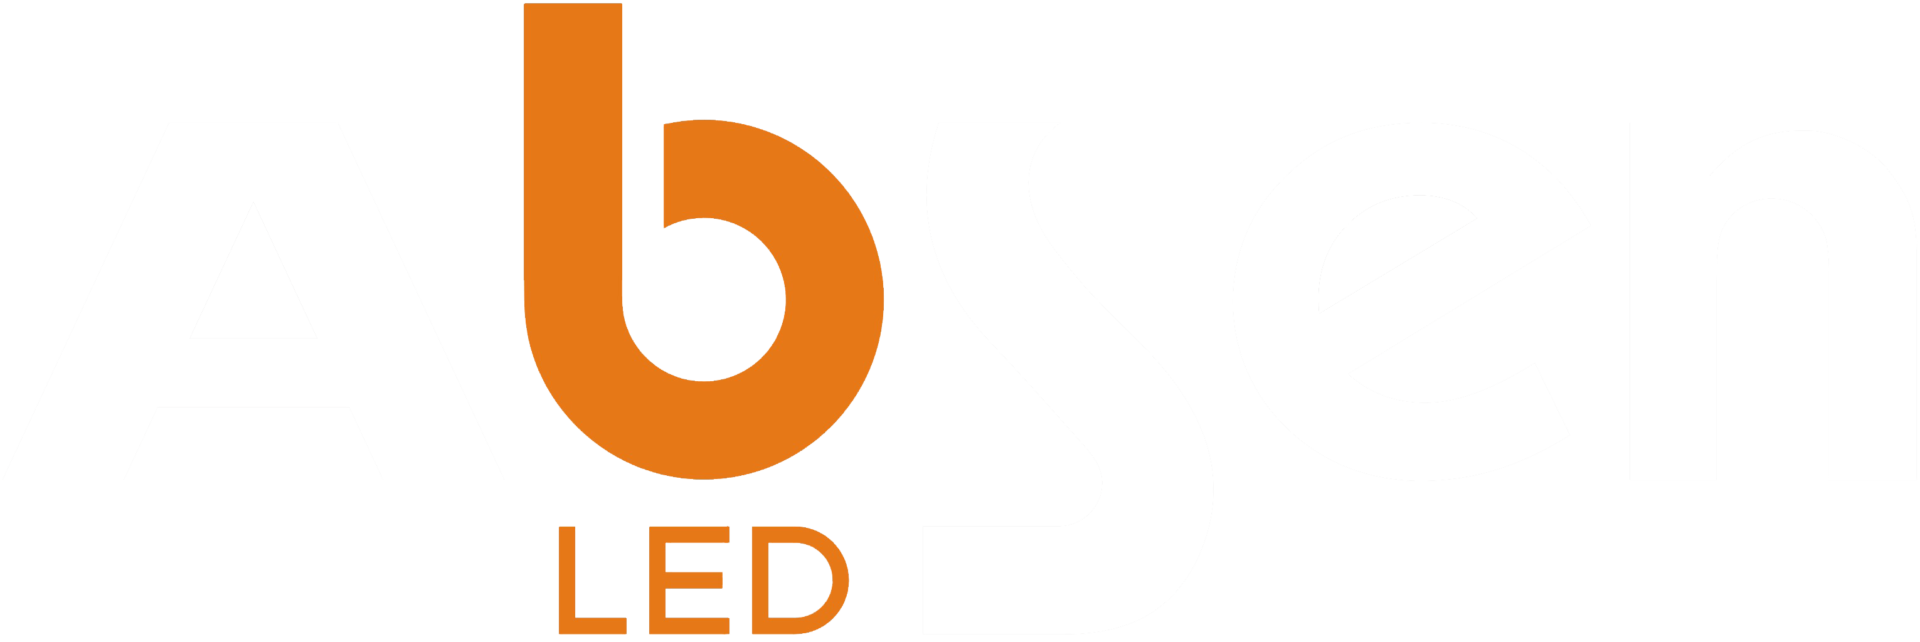 Absen logo